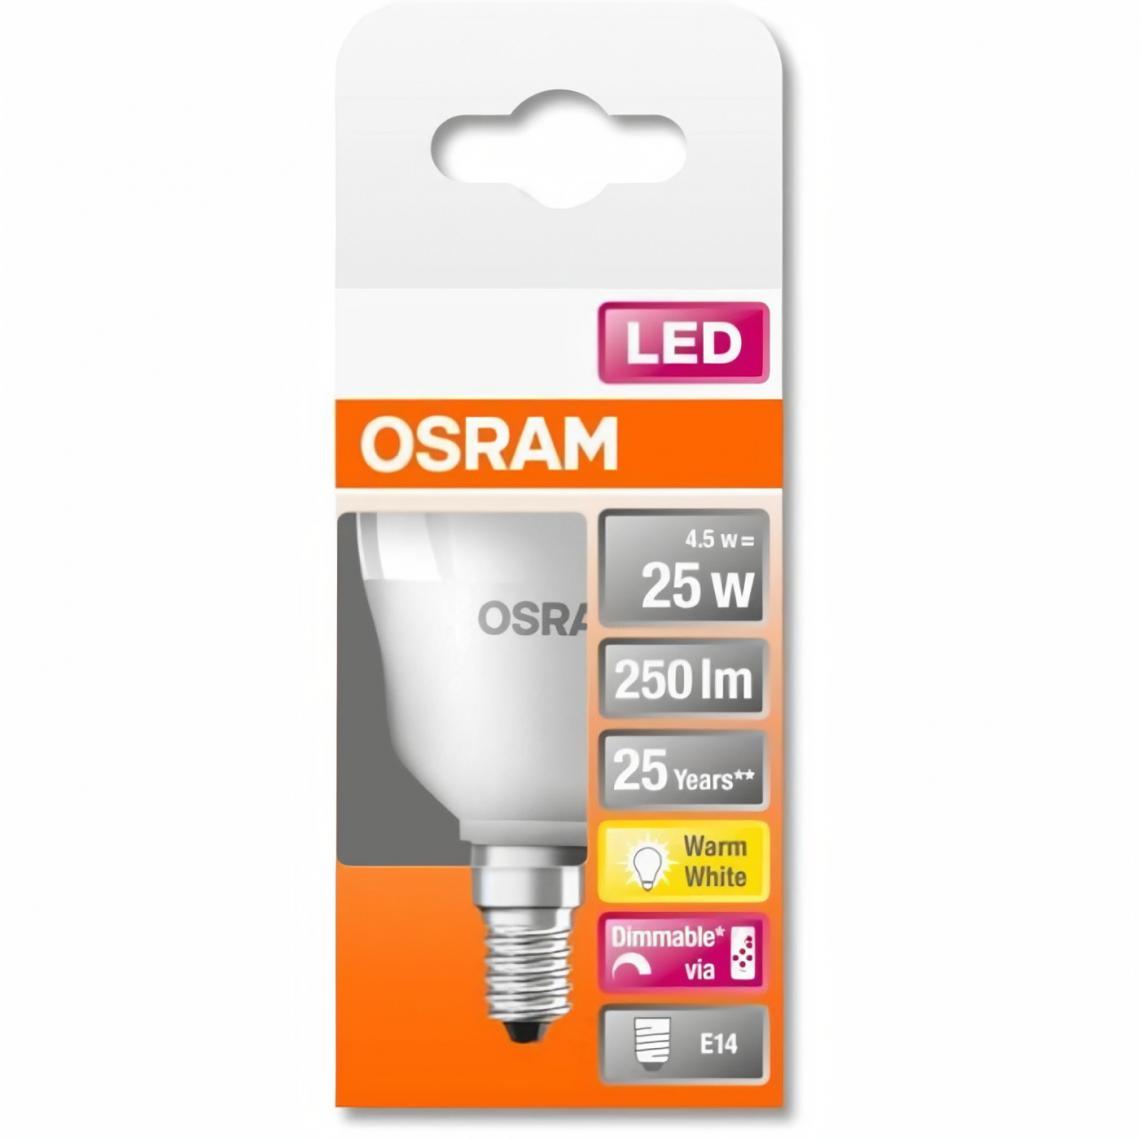 Osram - OSRAM Ampoule LED STAR+ Sphérique RGBW dép radiateur var 4,5W=25 E14 ch - Ampoules LED